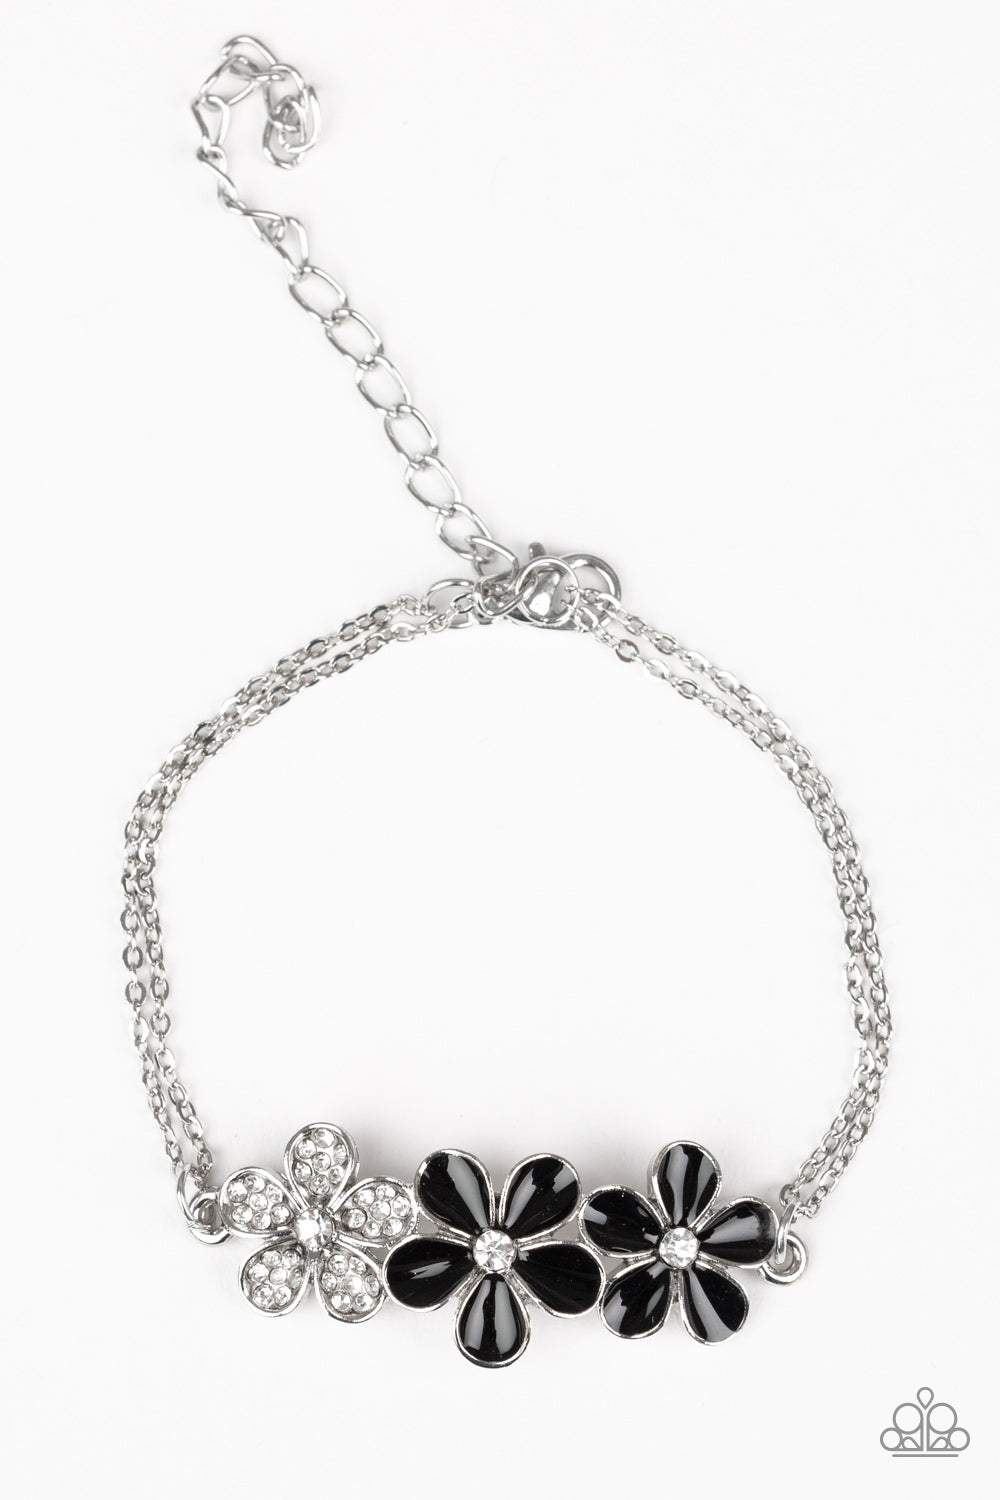 Paparazzi Flowering Fiji - Black Flowers - Silver Chain Bracelet - $5 Jewelry With Ashley Swint